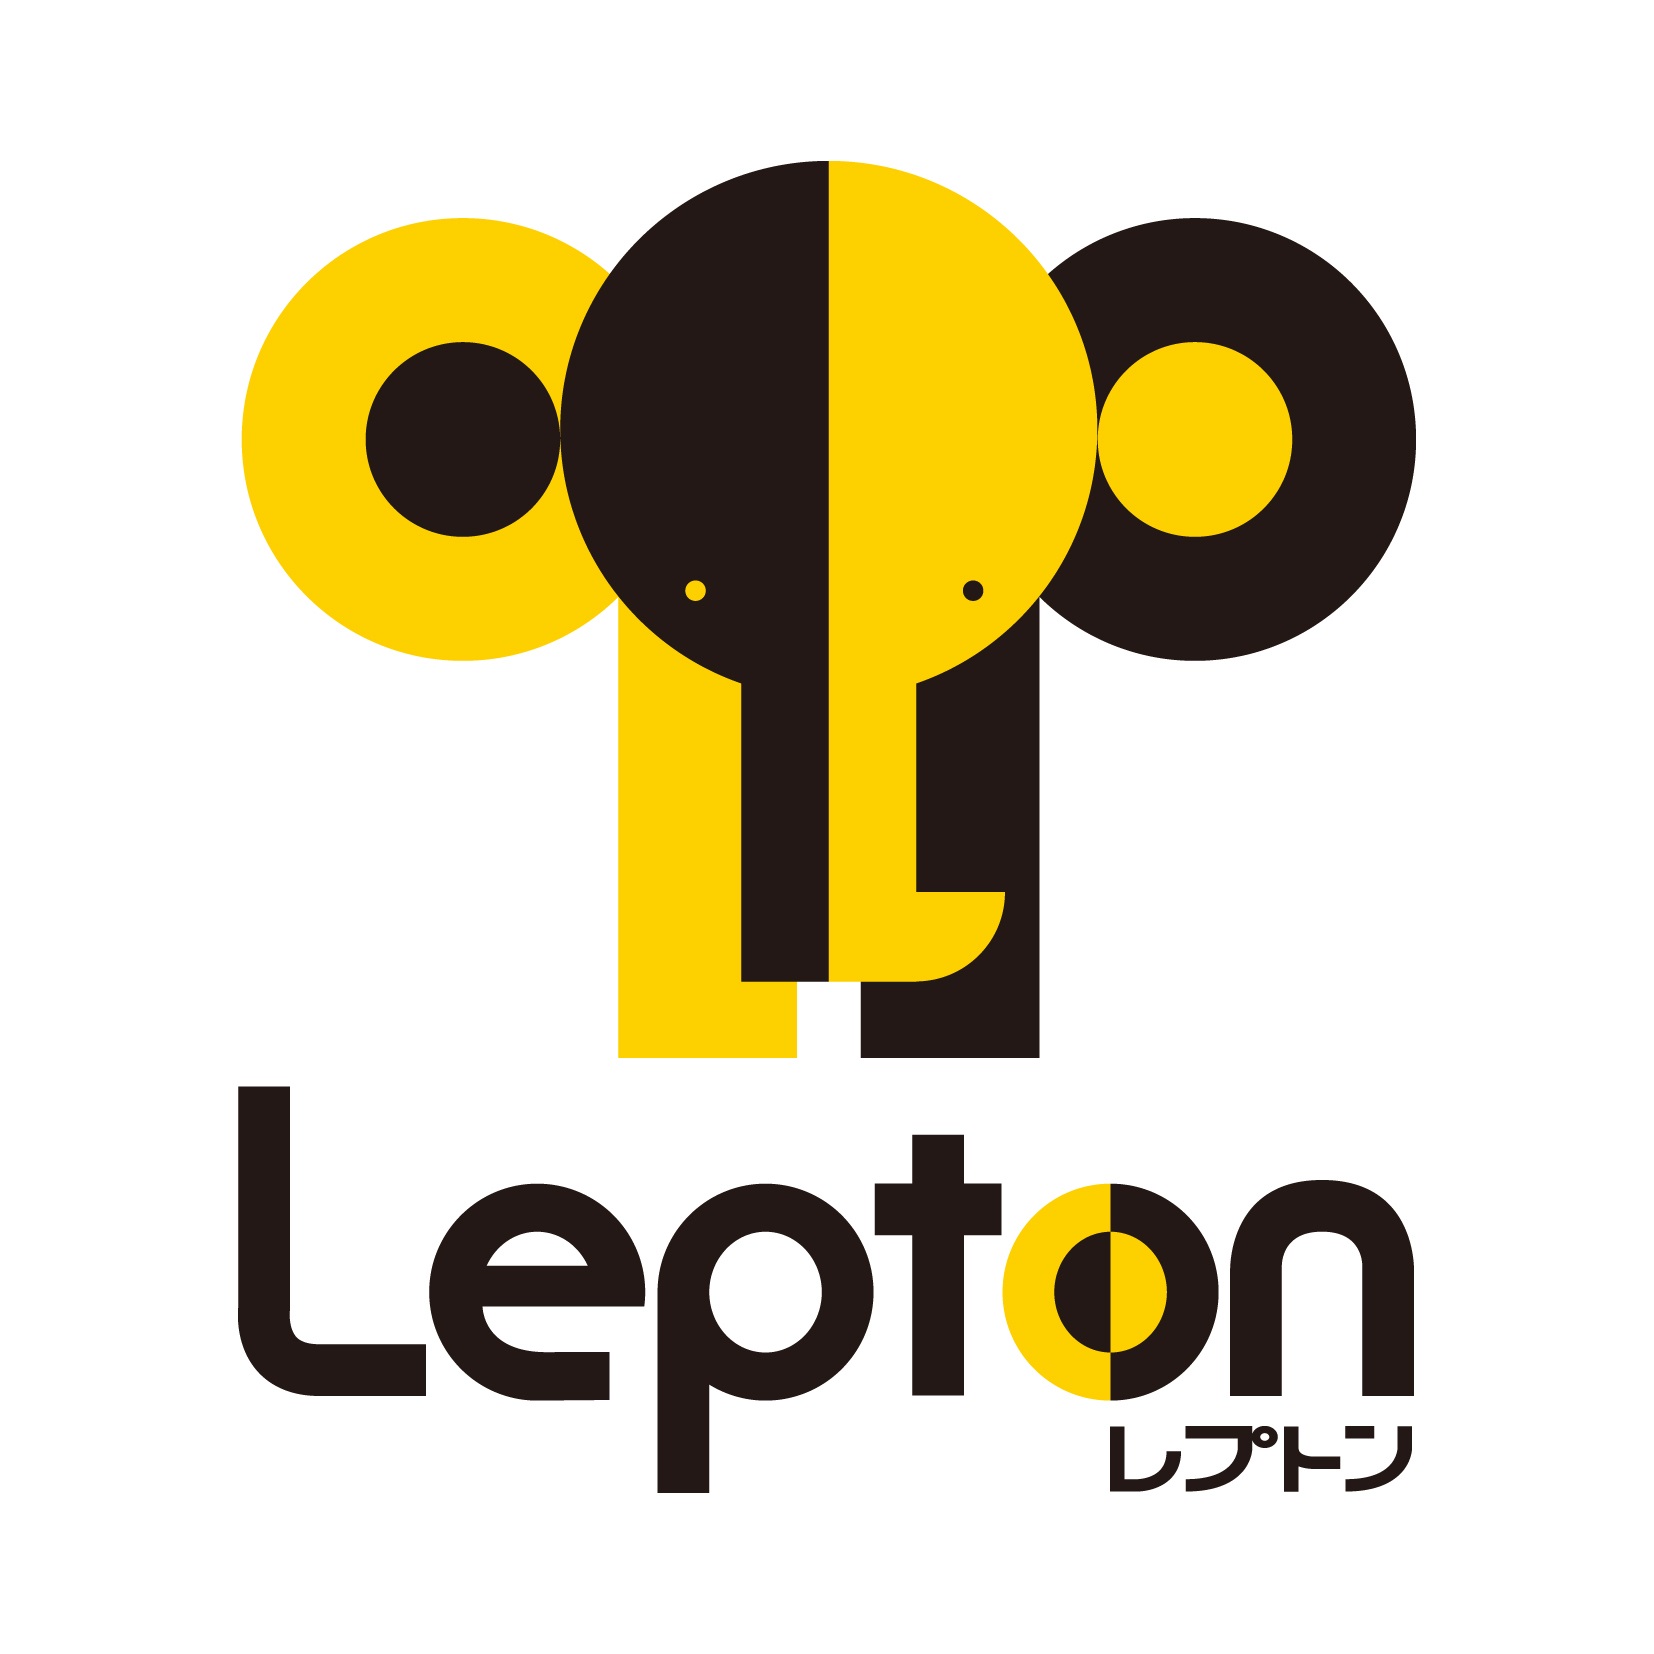 個別指導「3.14…」Lepton円山公園駅前校